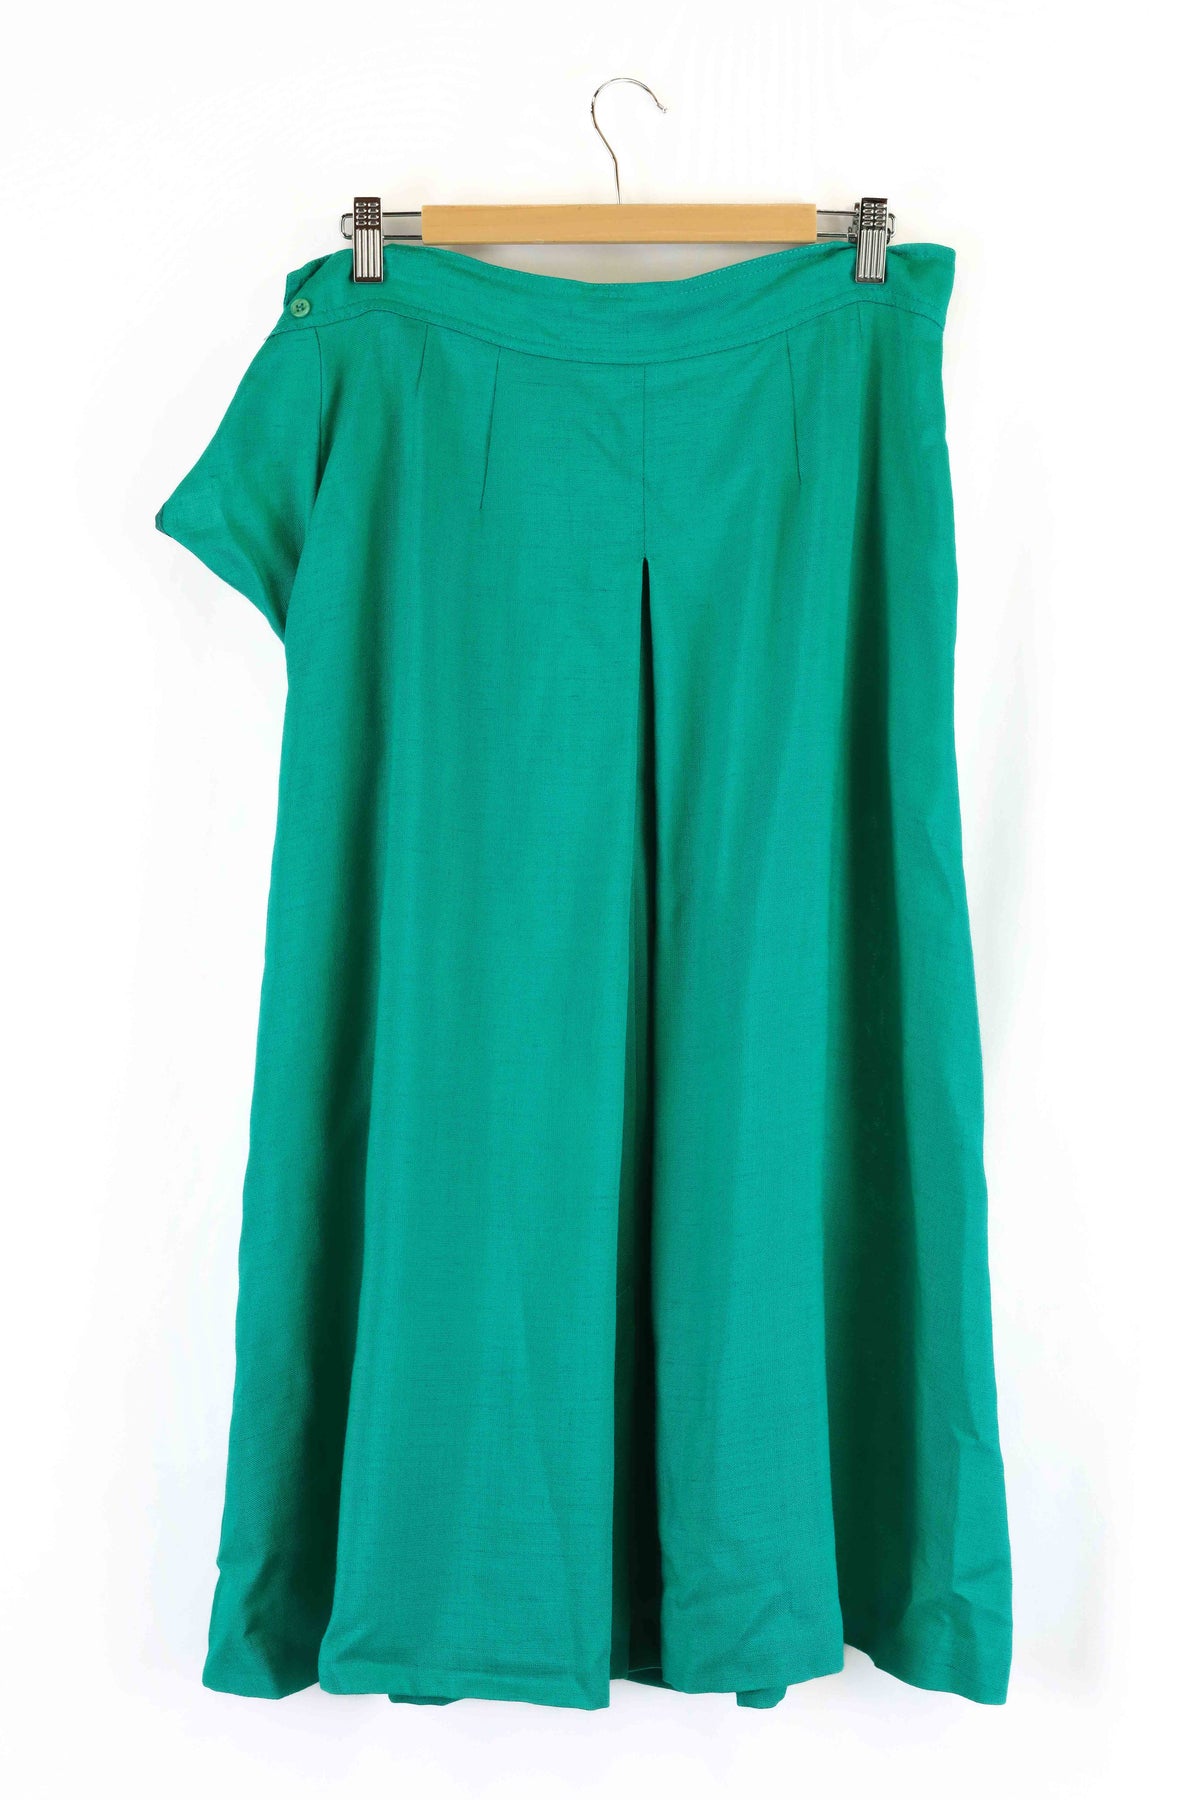 Fletcher Jones Green Linen Skirt 16